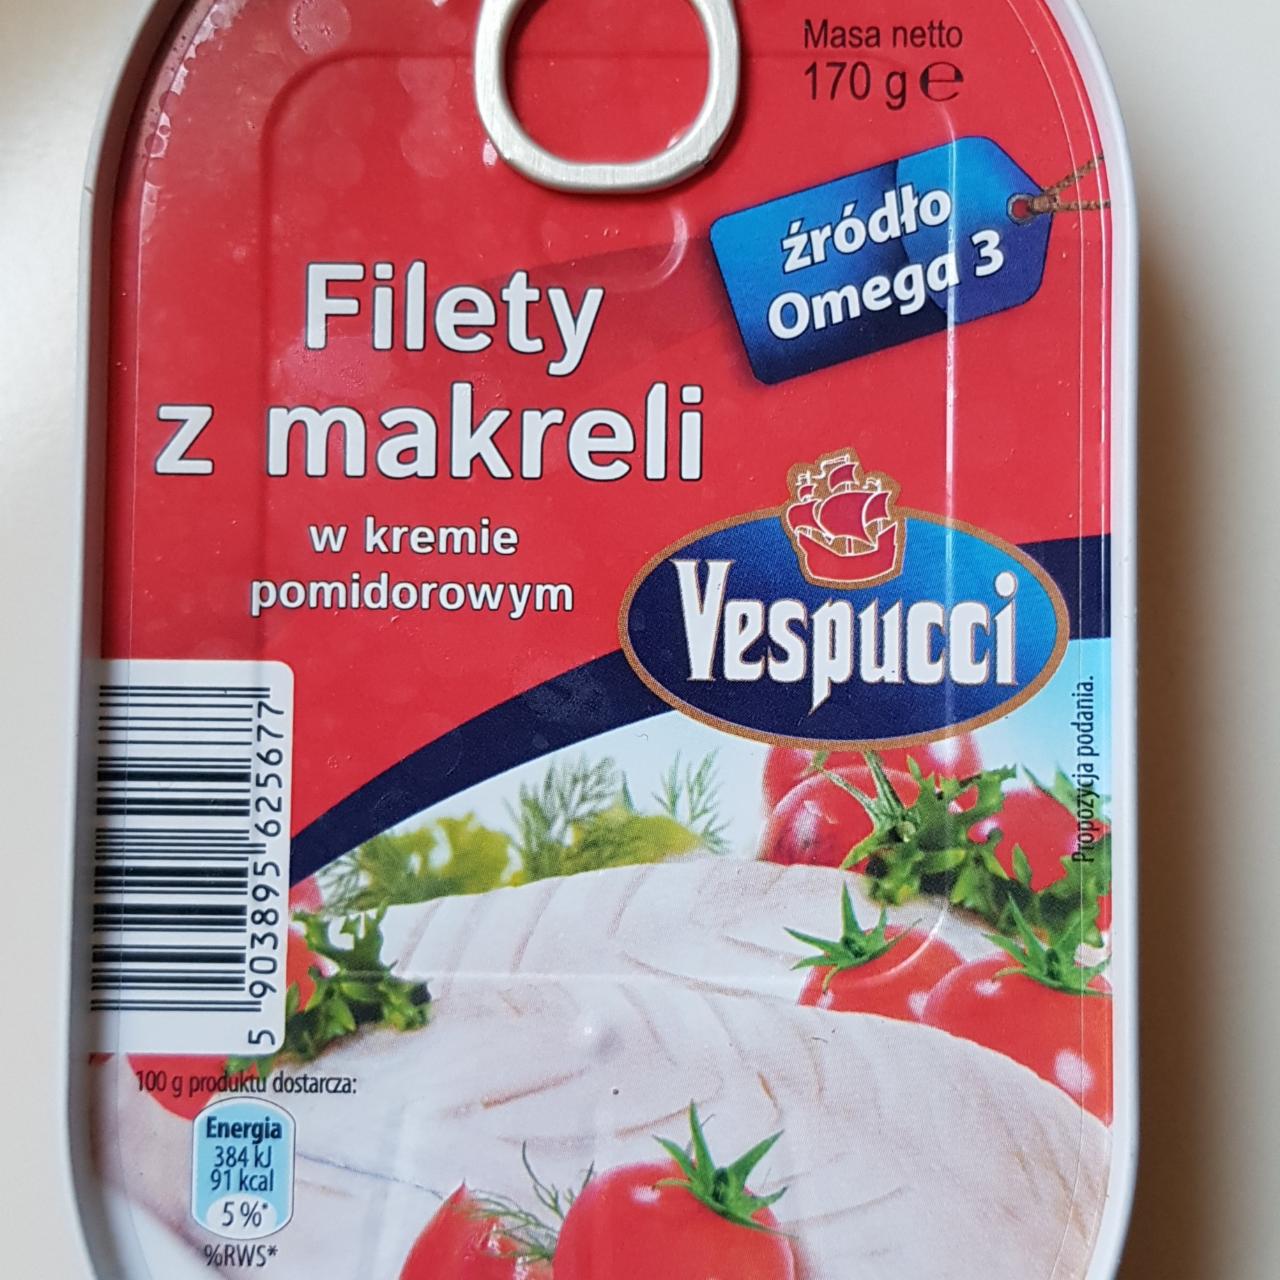 Фото - Filety z makreli w kremie pomidorowym Vespucci